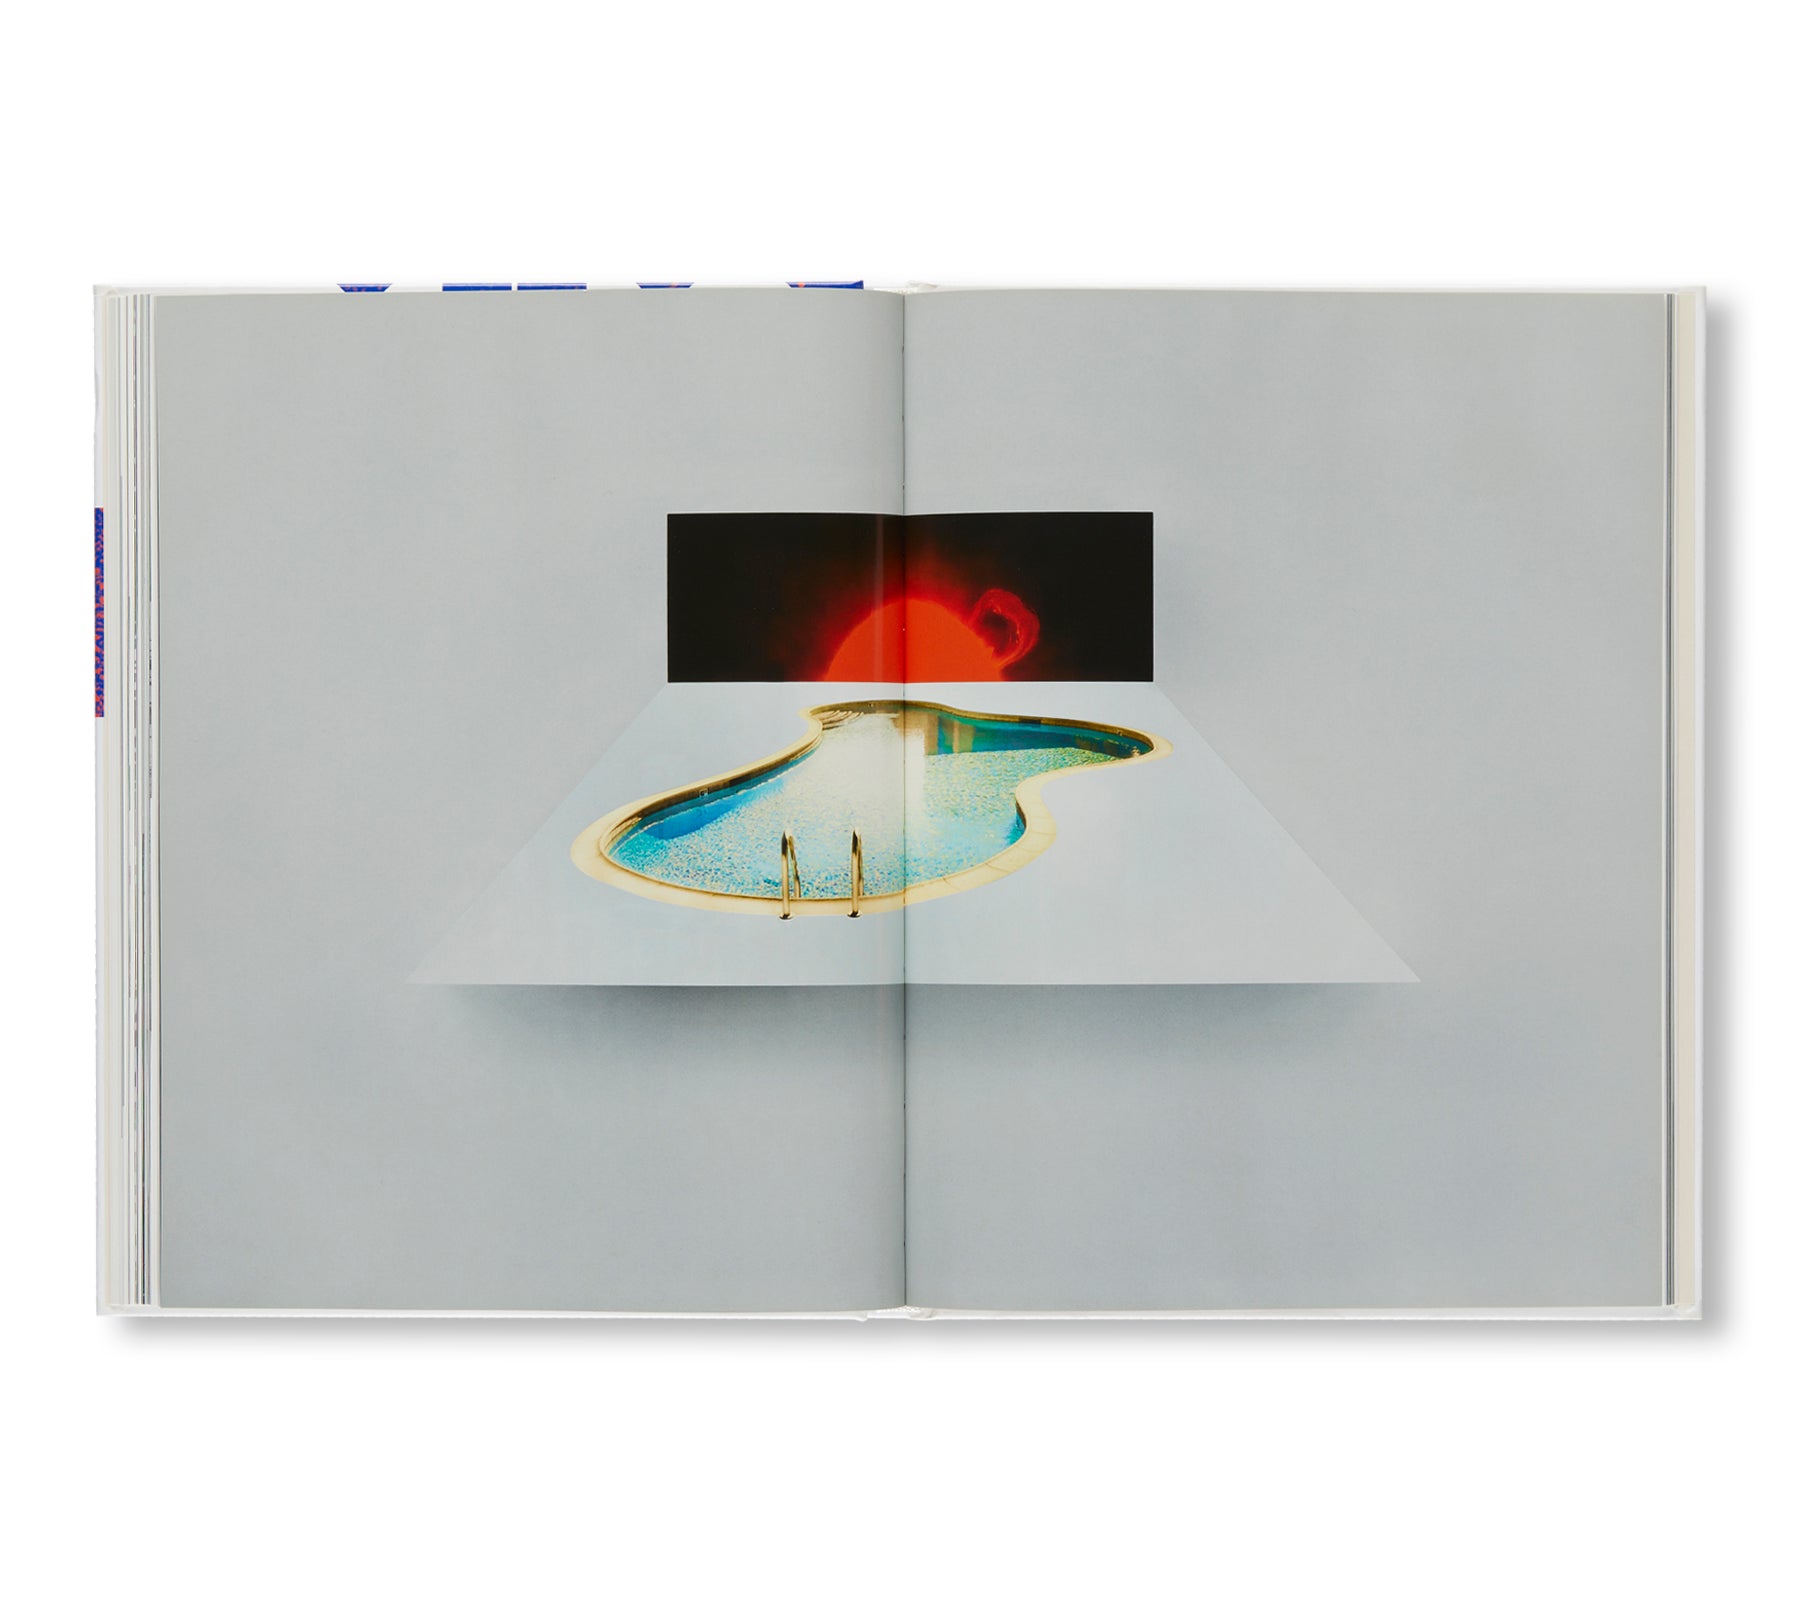 SCULPTURES 2001-2015 by Doug Aitken